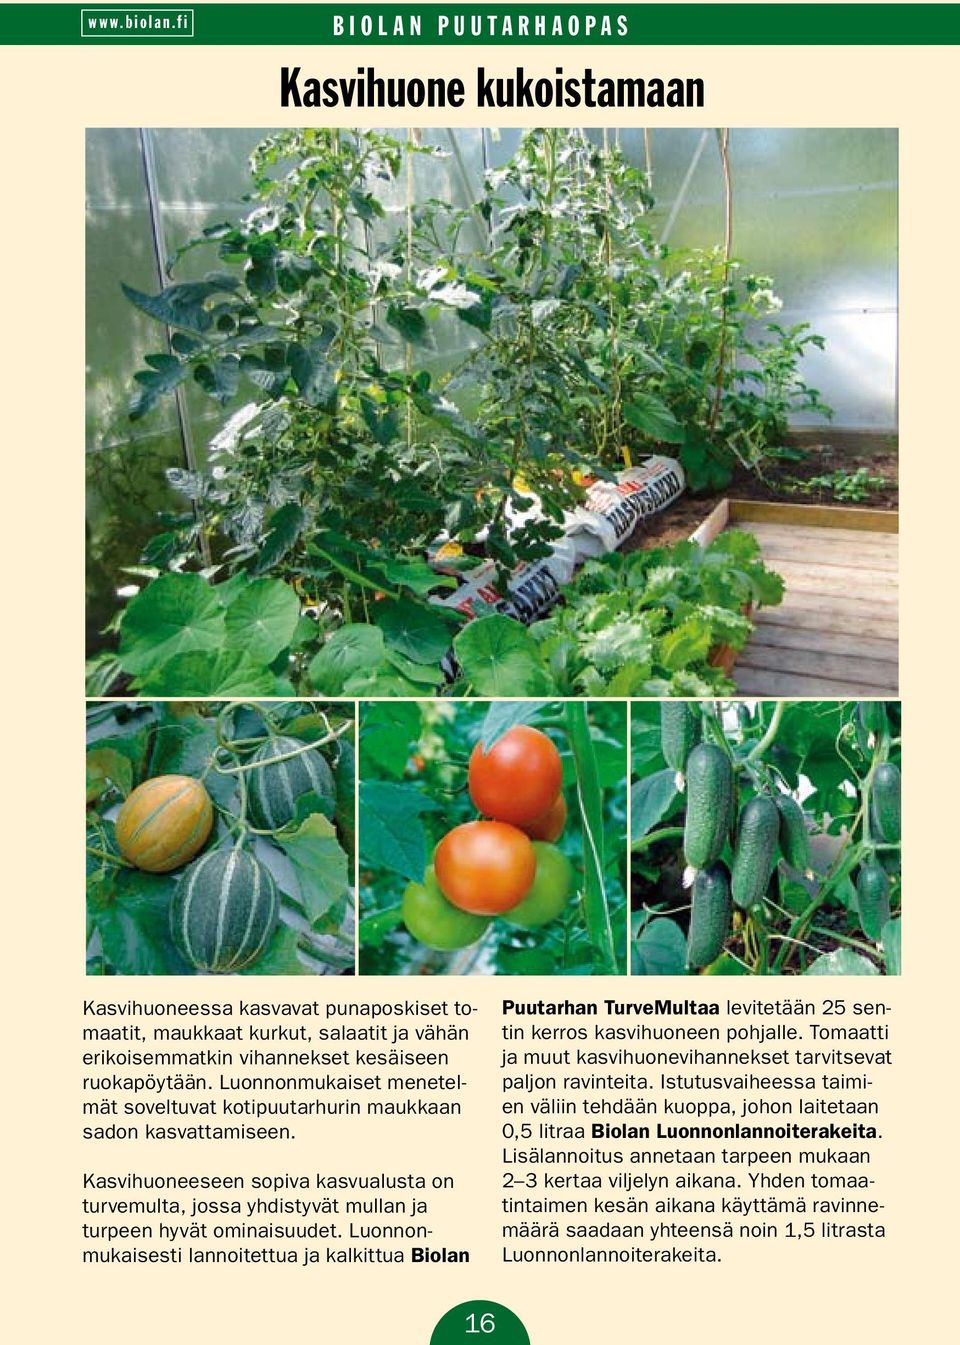 Luonnonmukaisesti lannoitettua ja kalkittua Biolan Puutarhan TurveMultaa levitetään 25 sentin kerros kasvihuoneen pohjalle. Tomaatti ja muut kasvihuonevihannekset tarvitsevat paljon ravinteita.